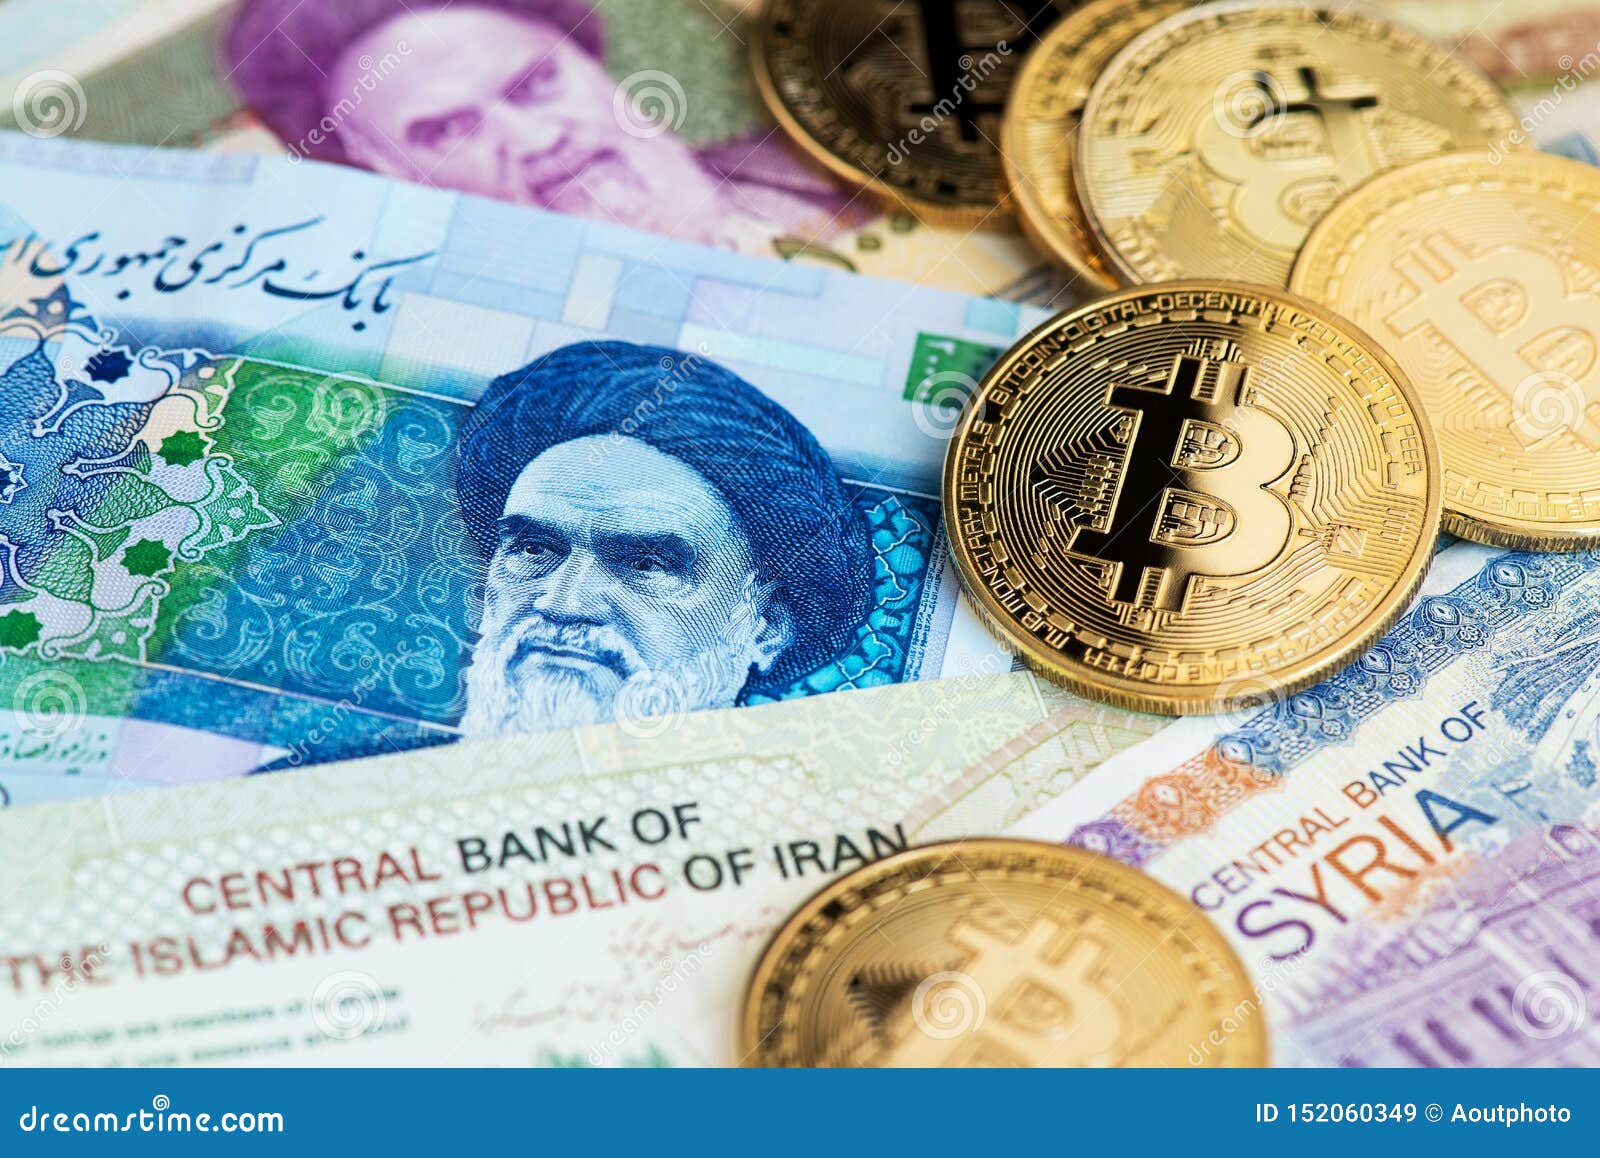 1 bitcoin to syrian pound